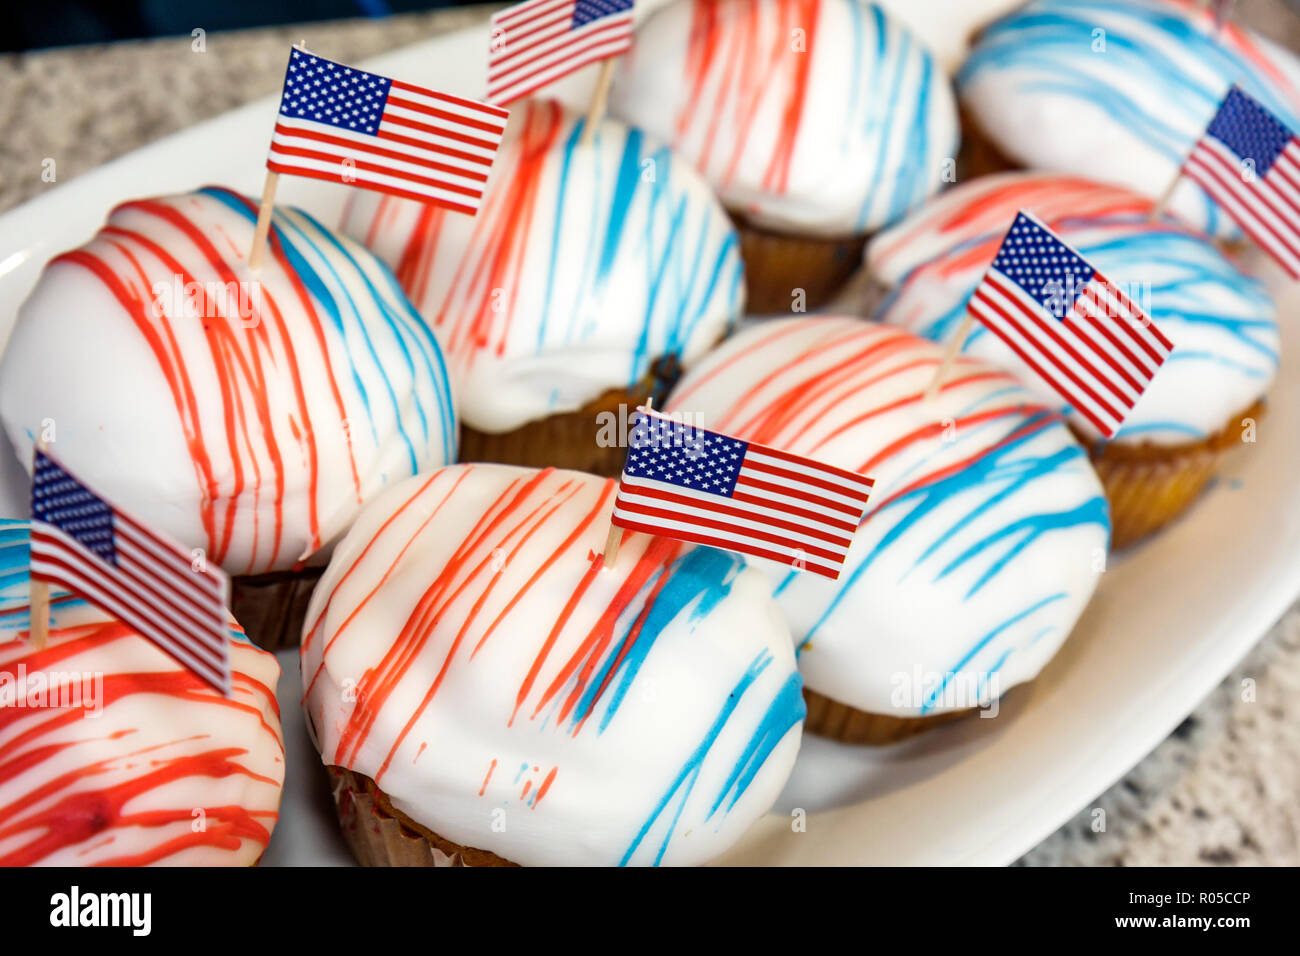 Miami Florida, Adrienne Arsht Center, 2009 Präsidenteneinweihung Simulcast, Barack Obama, Cupcakes, rot, weiß, blau, Patriotismus mit amerikanischer Papierflagge, desse Stockfoto